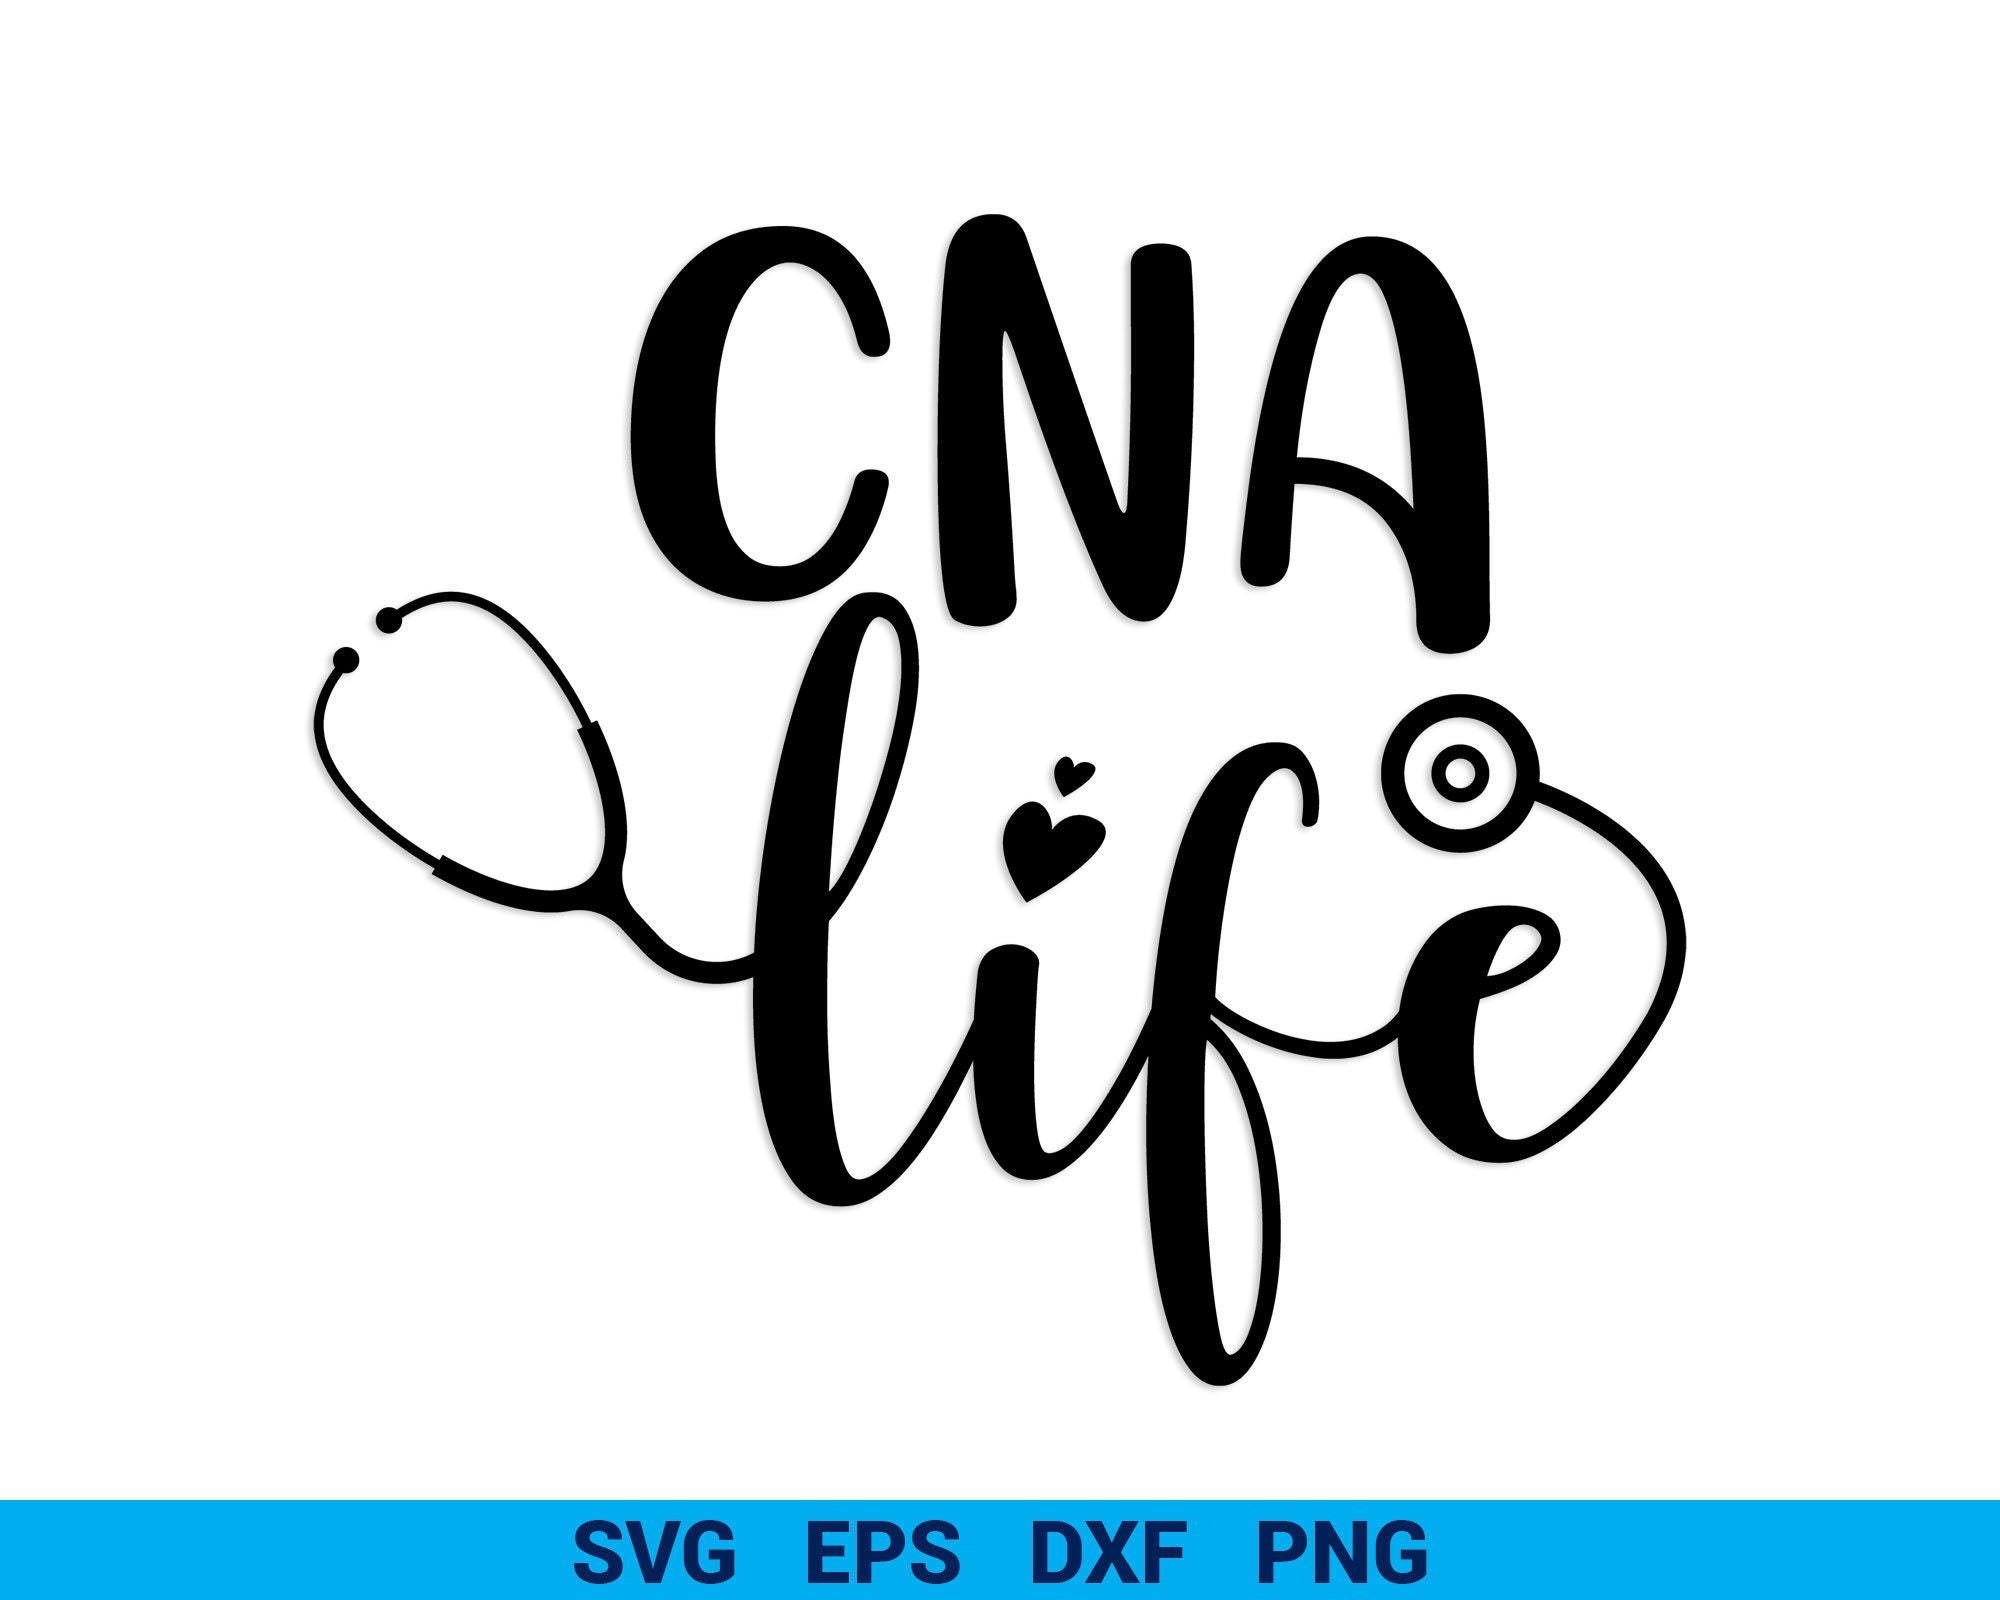 CNA SVG Cut Image